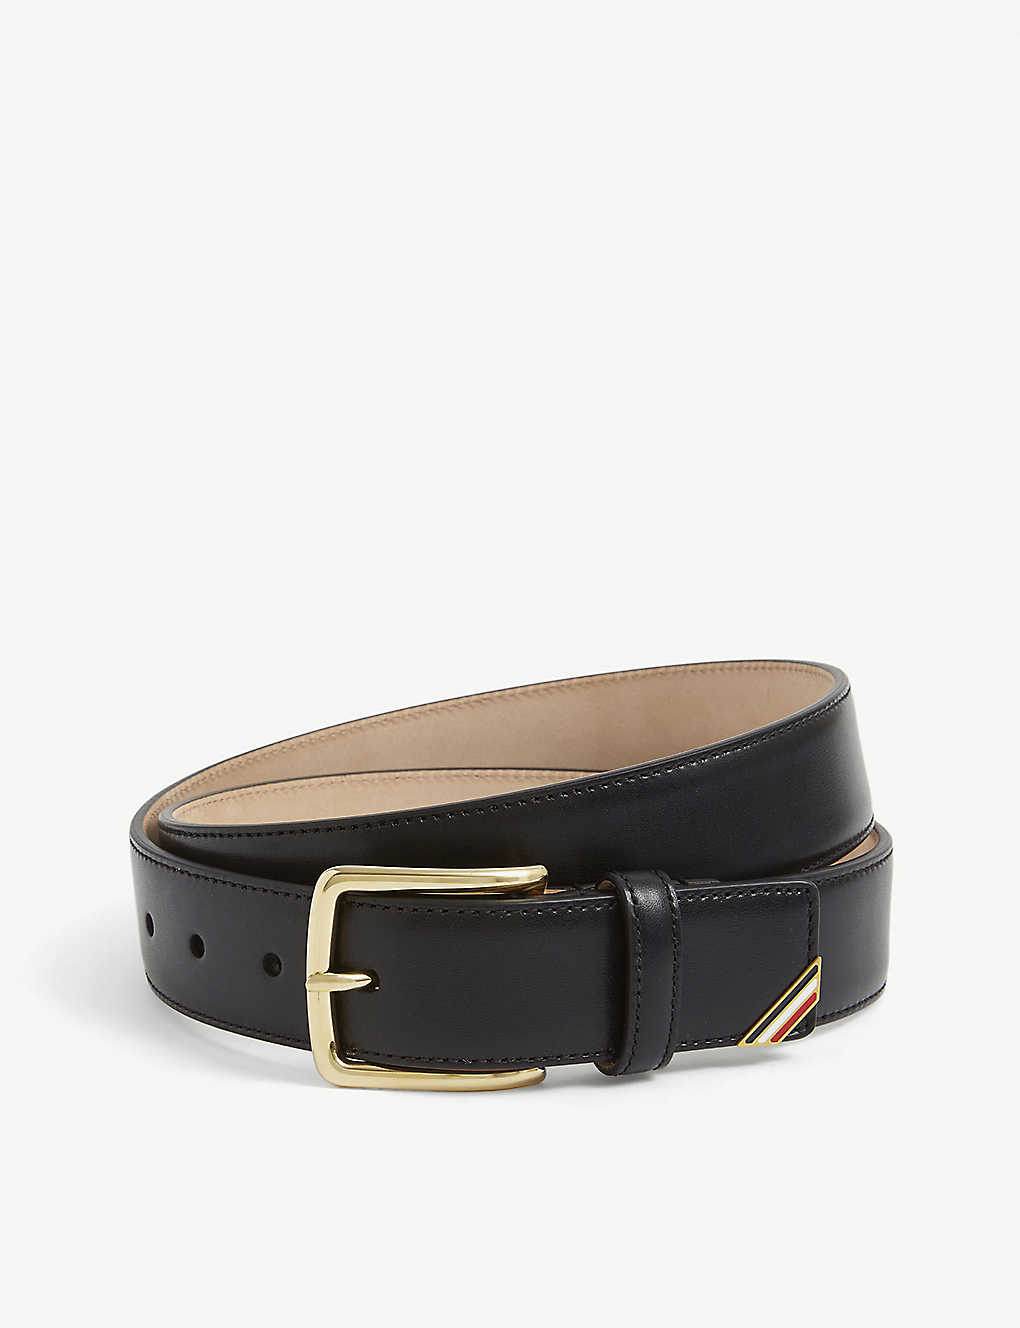 Branded leather belt(9301262)